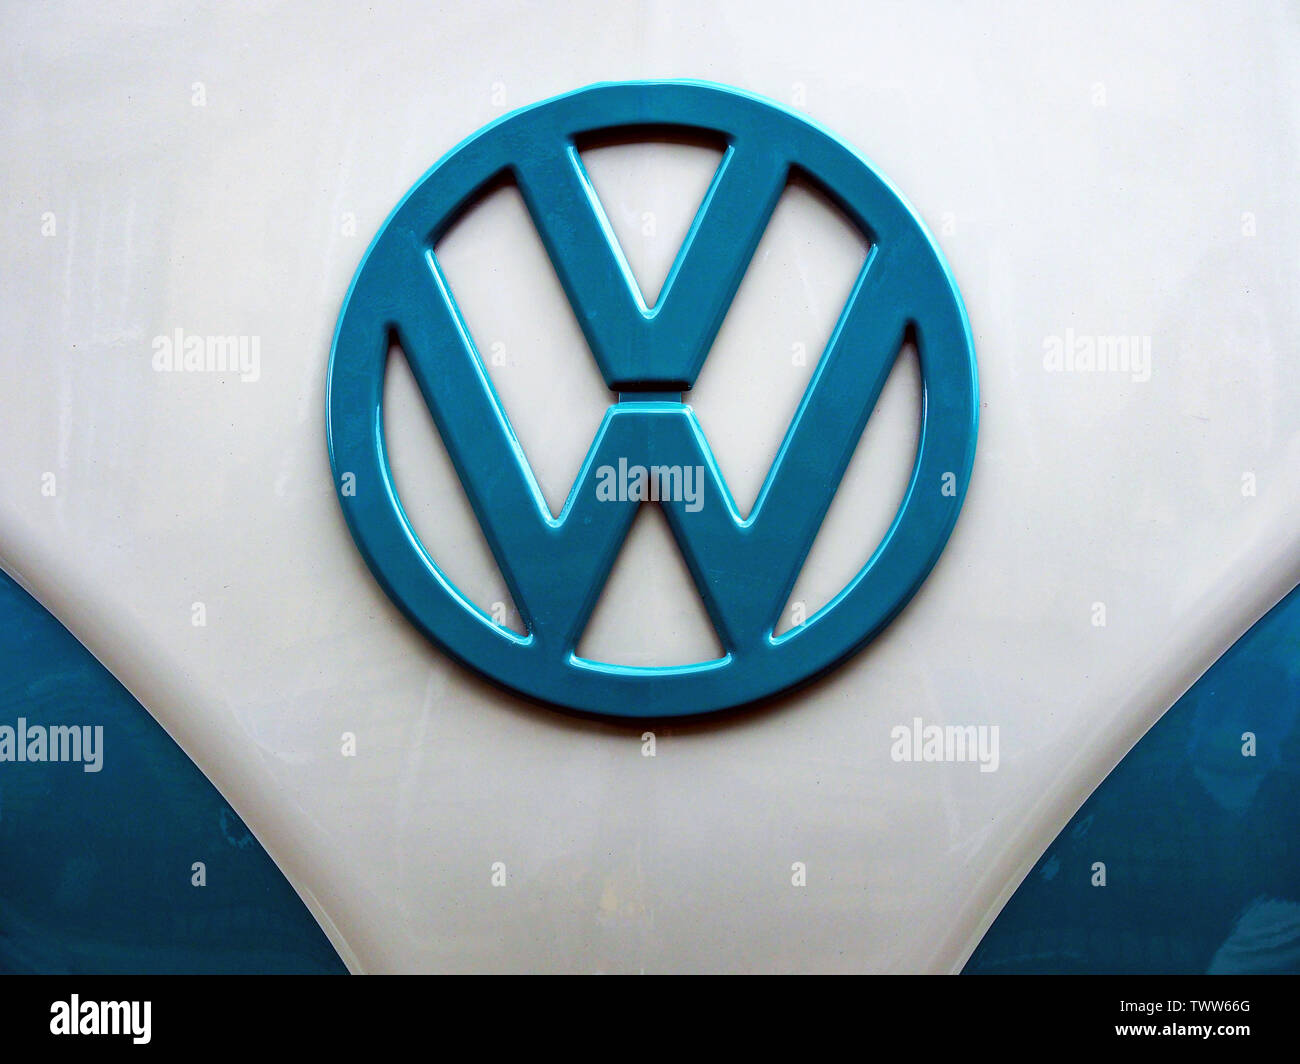 A Volkswagen Emblem on a Volkswagen Camper van Stock Photo